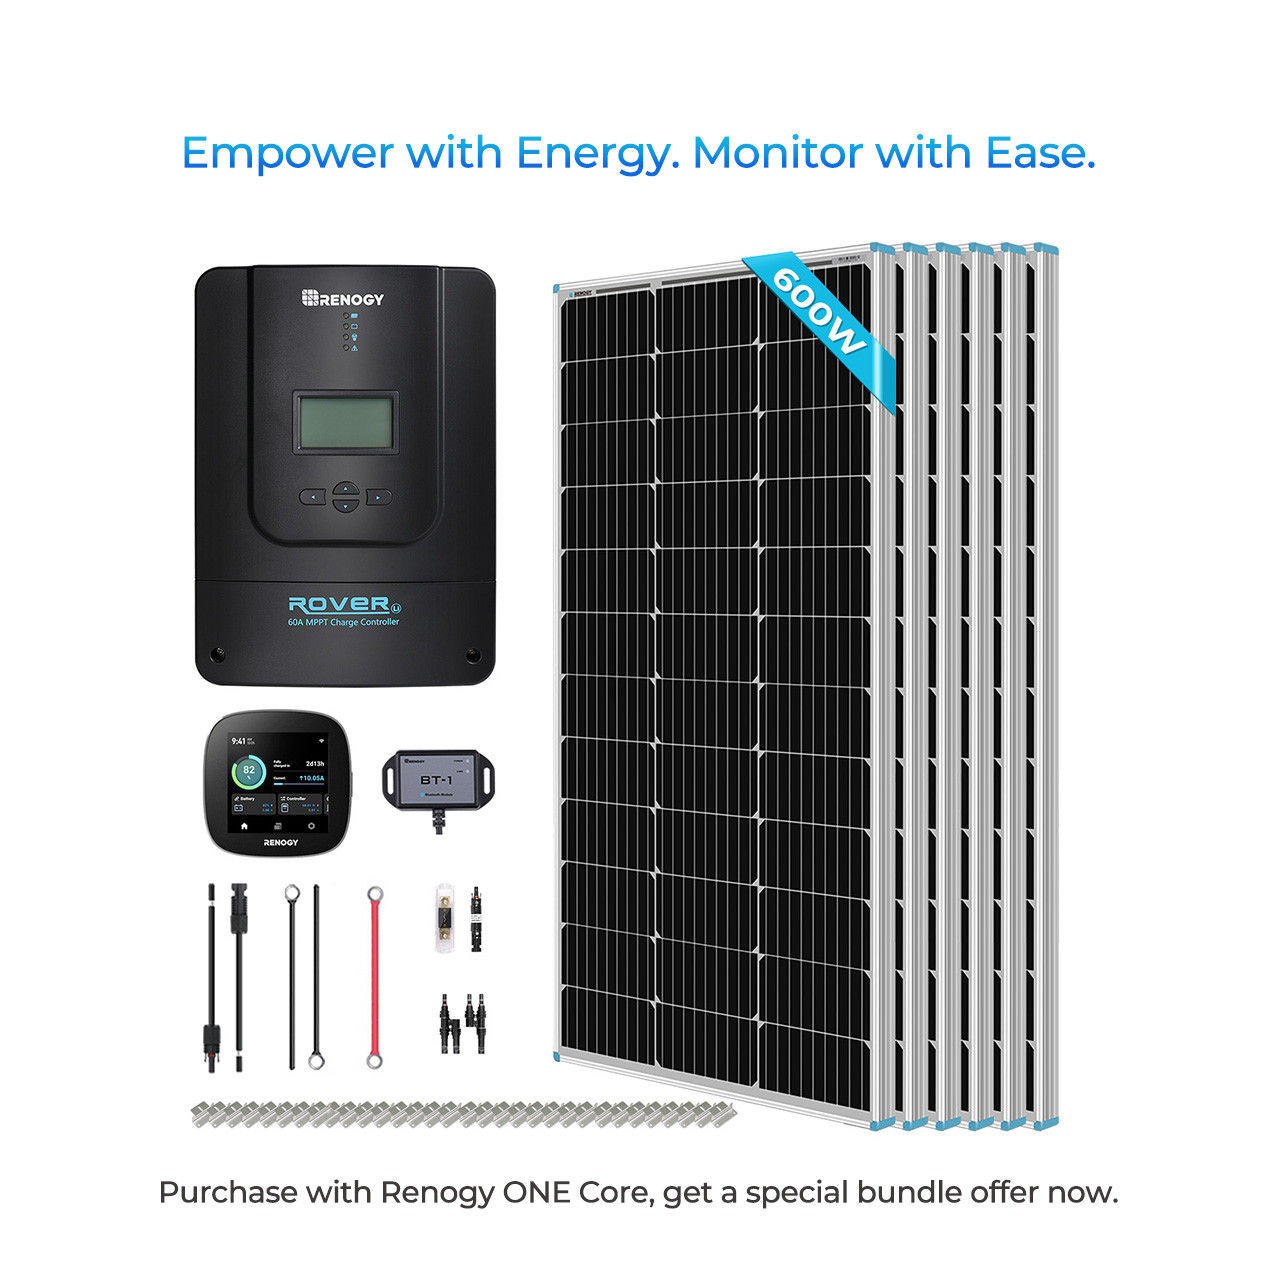 Kit Solar 700W 12/24V VE Base2 Fotovoltaico Mono Controlador de carga 60A  MPPT